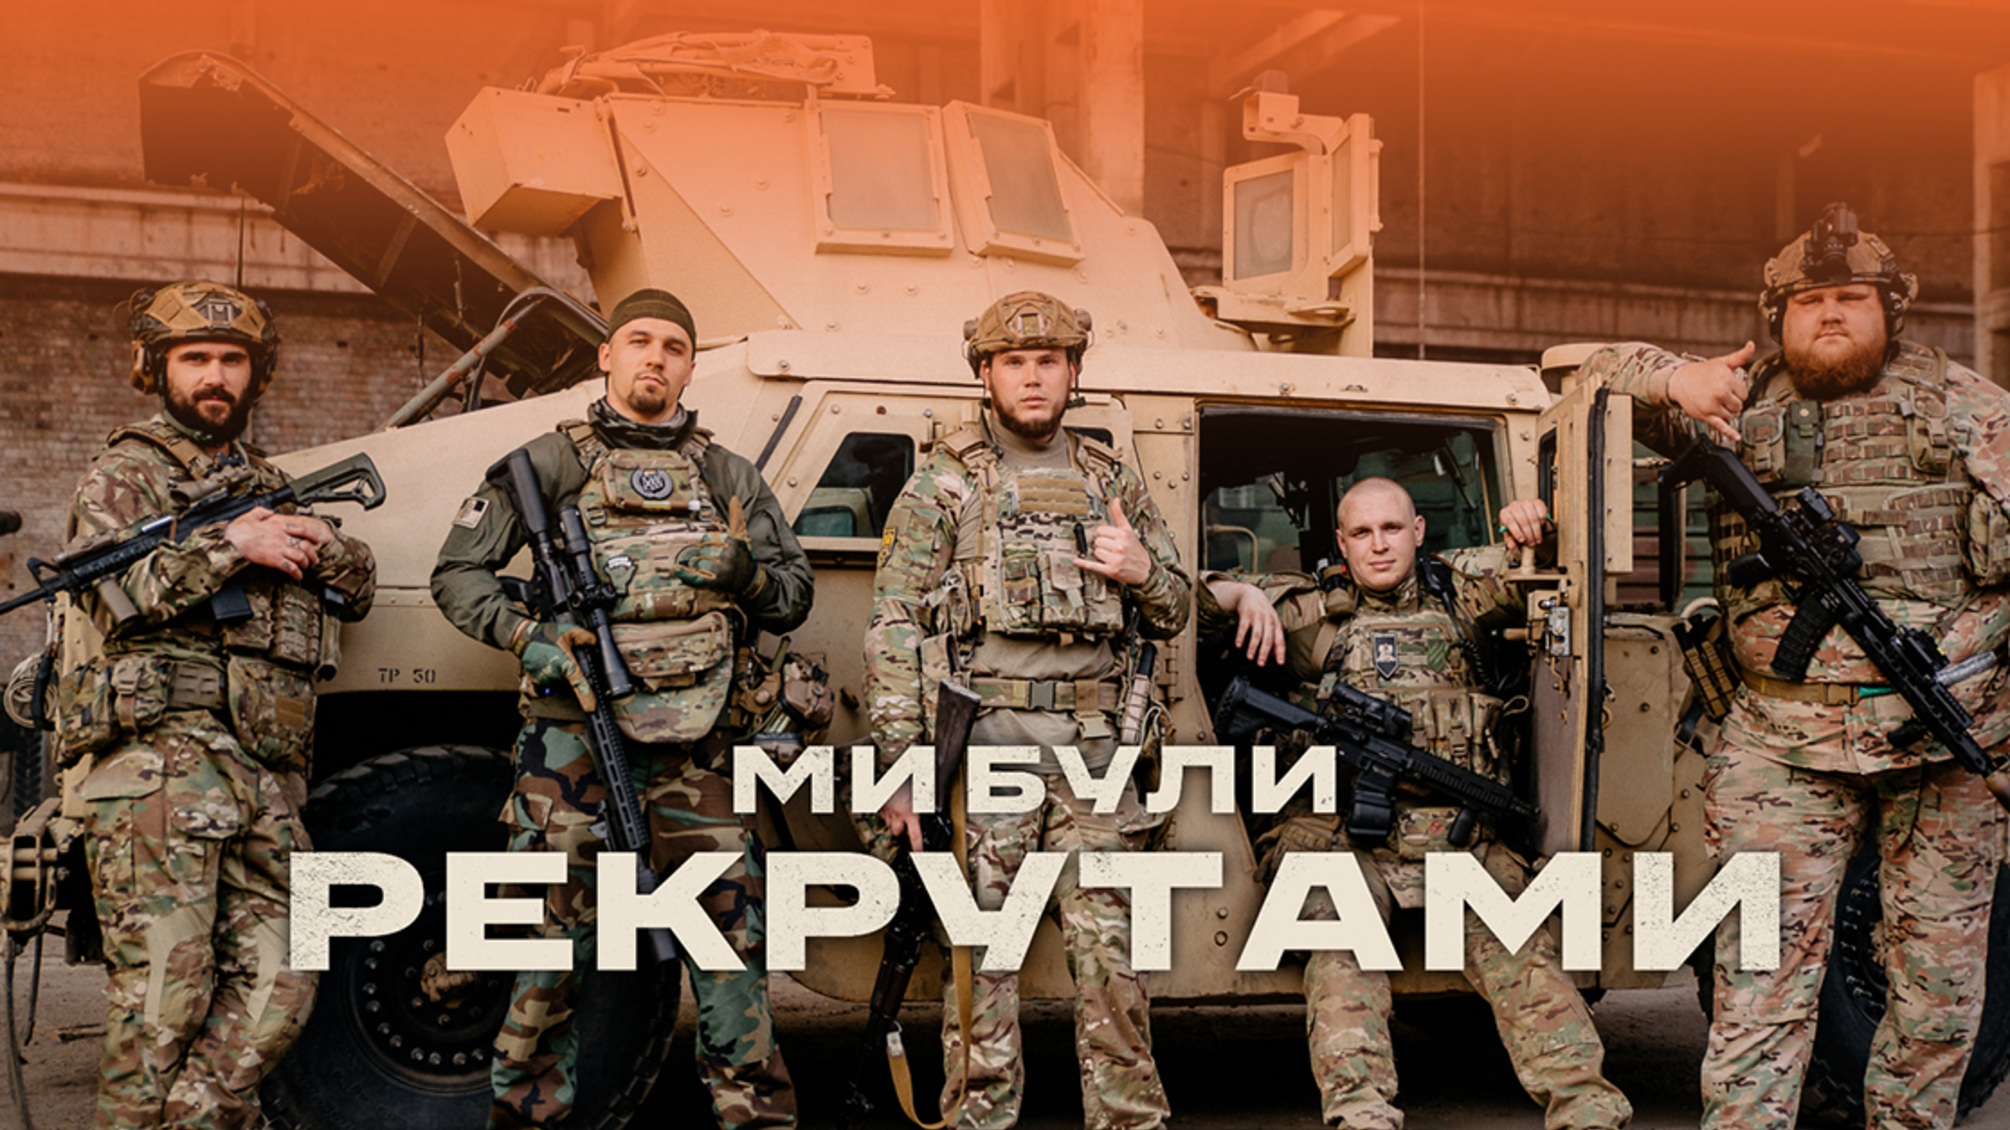 На Netflix вышел документальный фильм 'Мы были рекрутами' об украинских героях